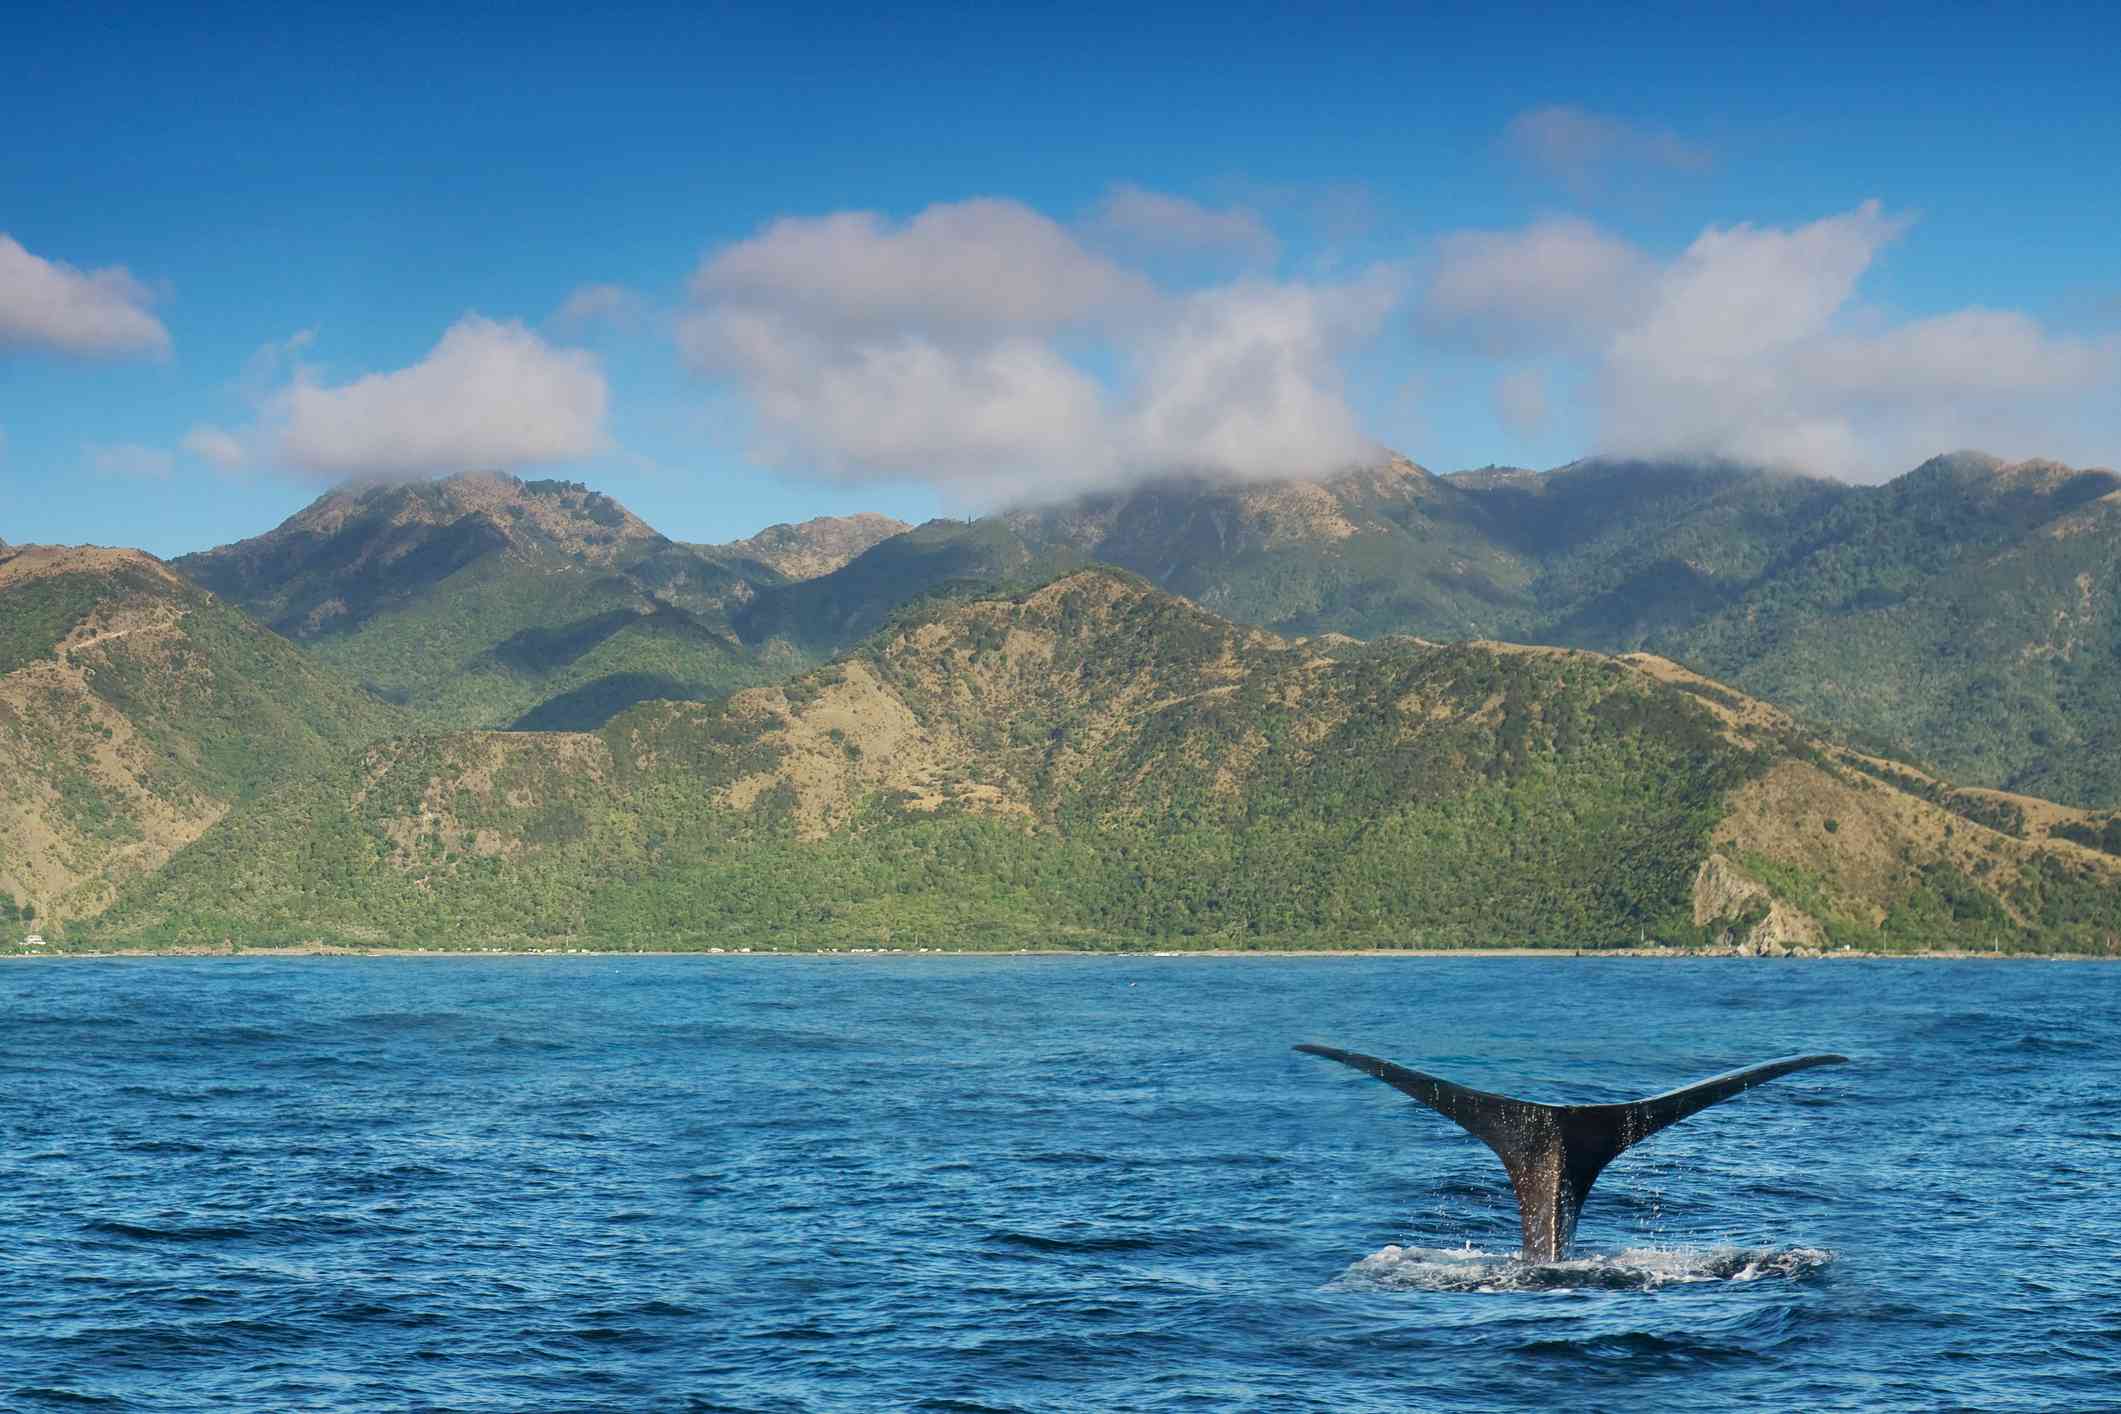 El relato negro de una ballena mientras se sumerge en el mar azul/verde de la costa de Kaikoura, con montañas rocosas cubiertas de vegetación verde y un cielo azul y nubes blancas encima